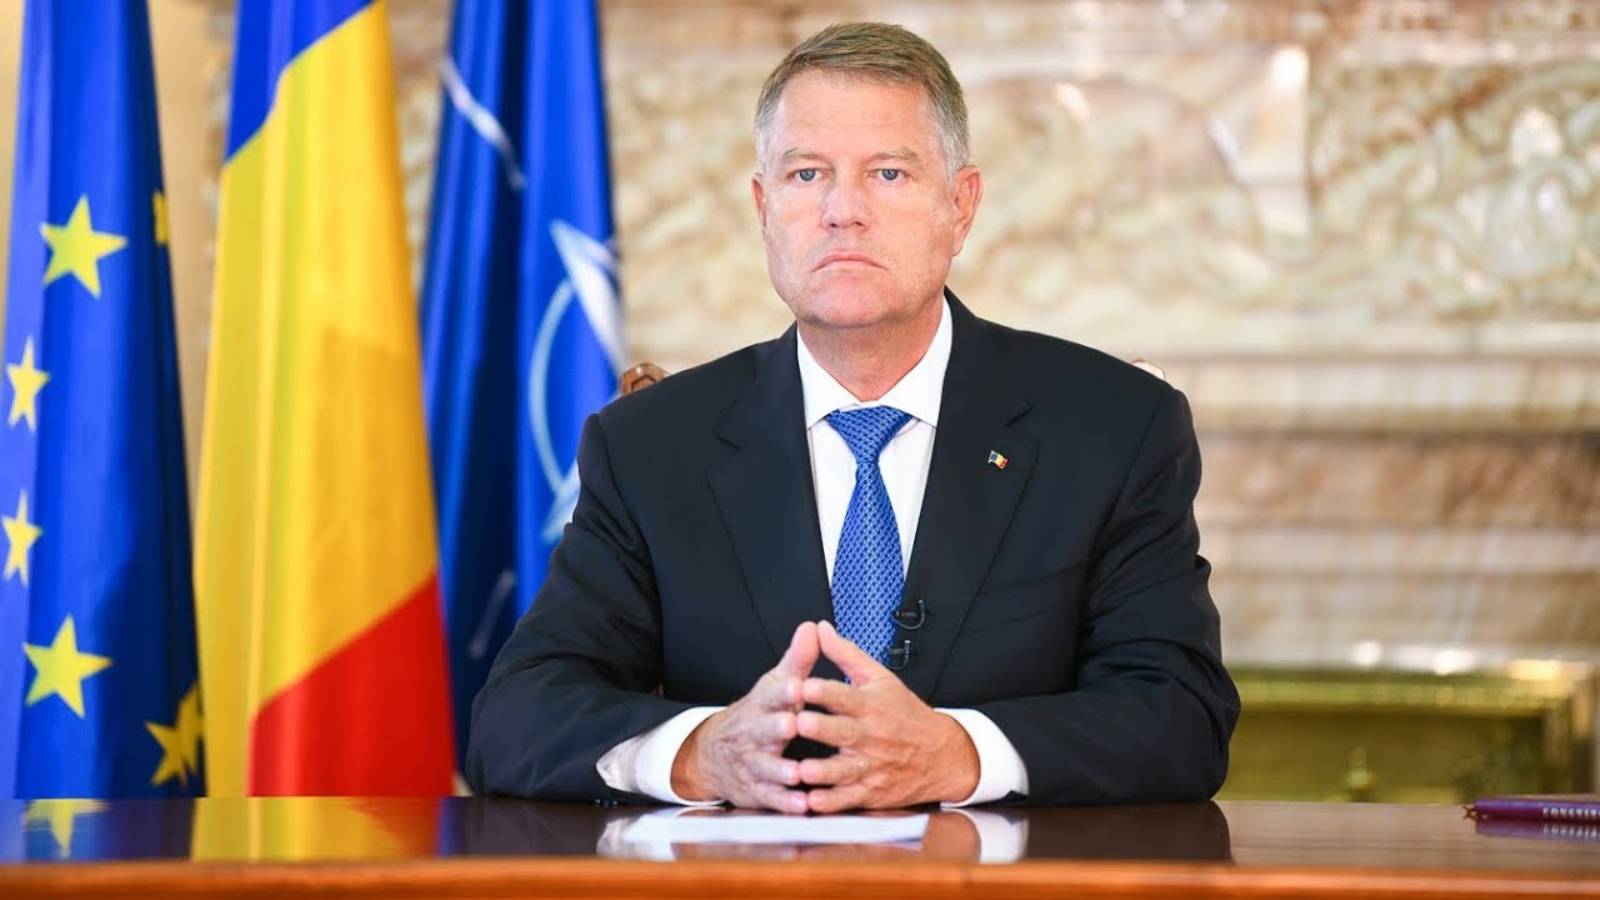 Klaus Iohannis Karantæne Nye BEGRÆNSNINGER Rumænien